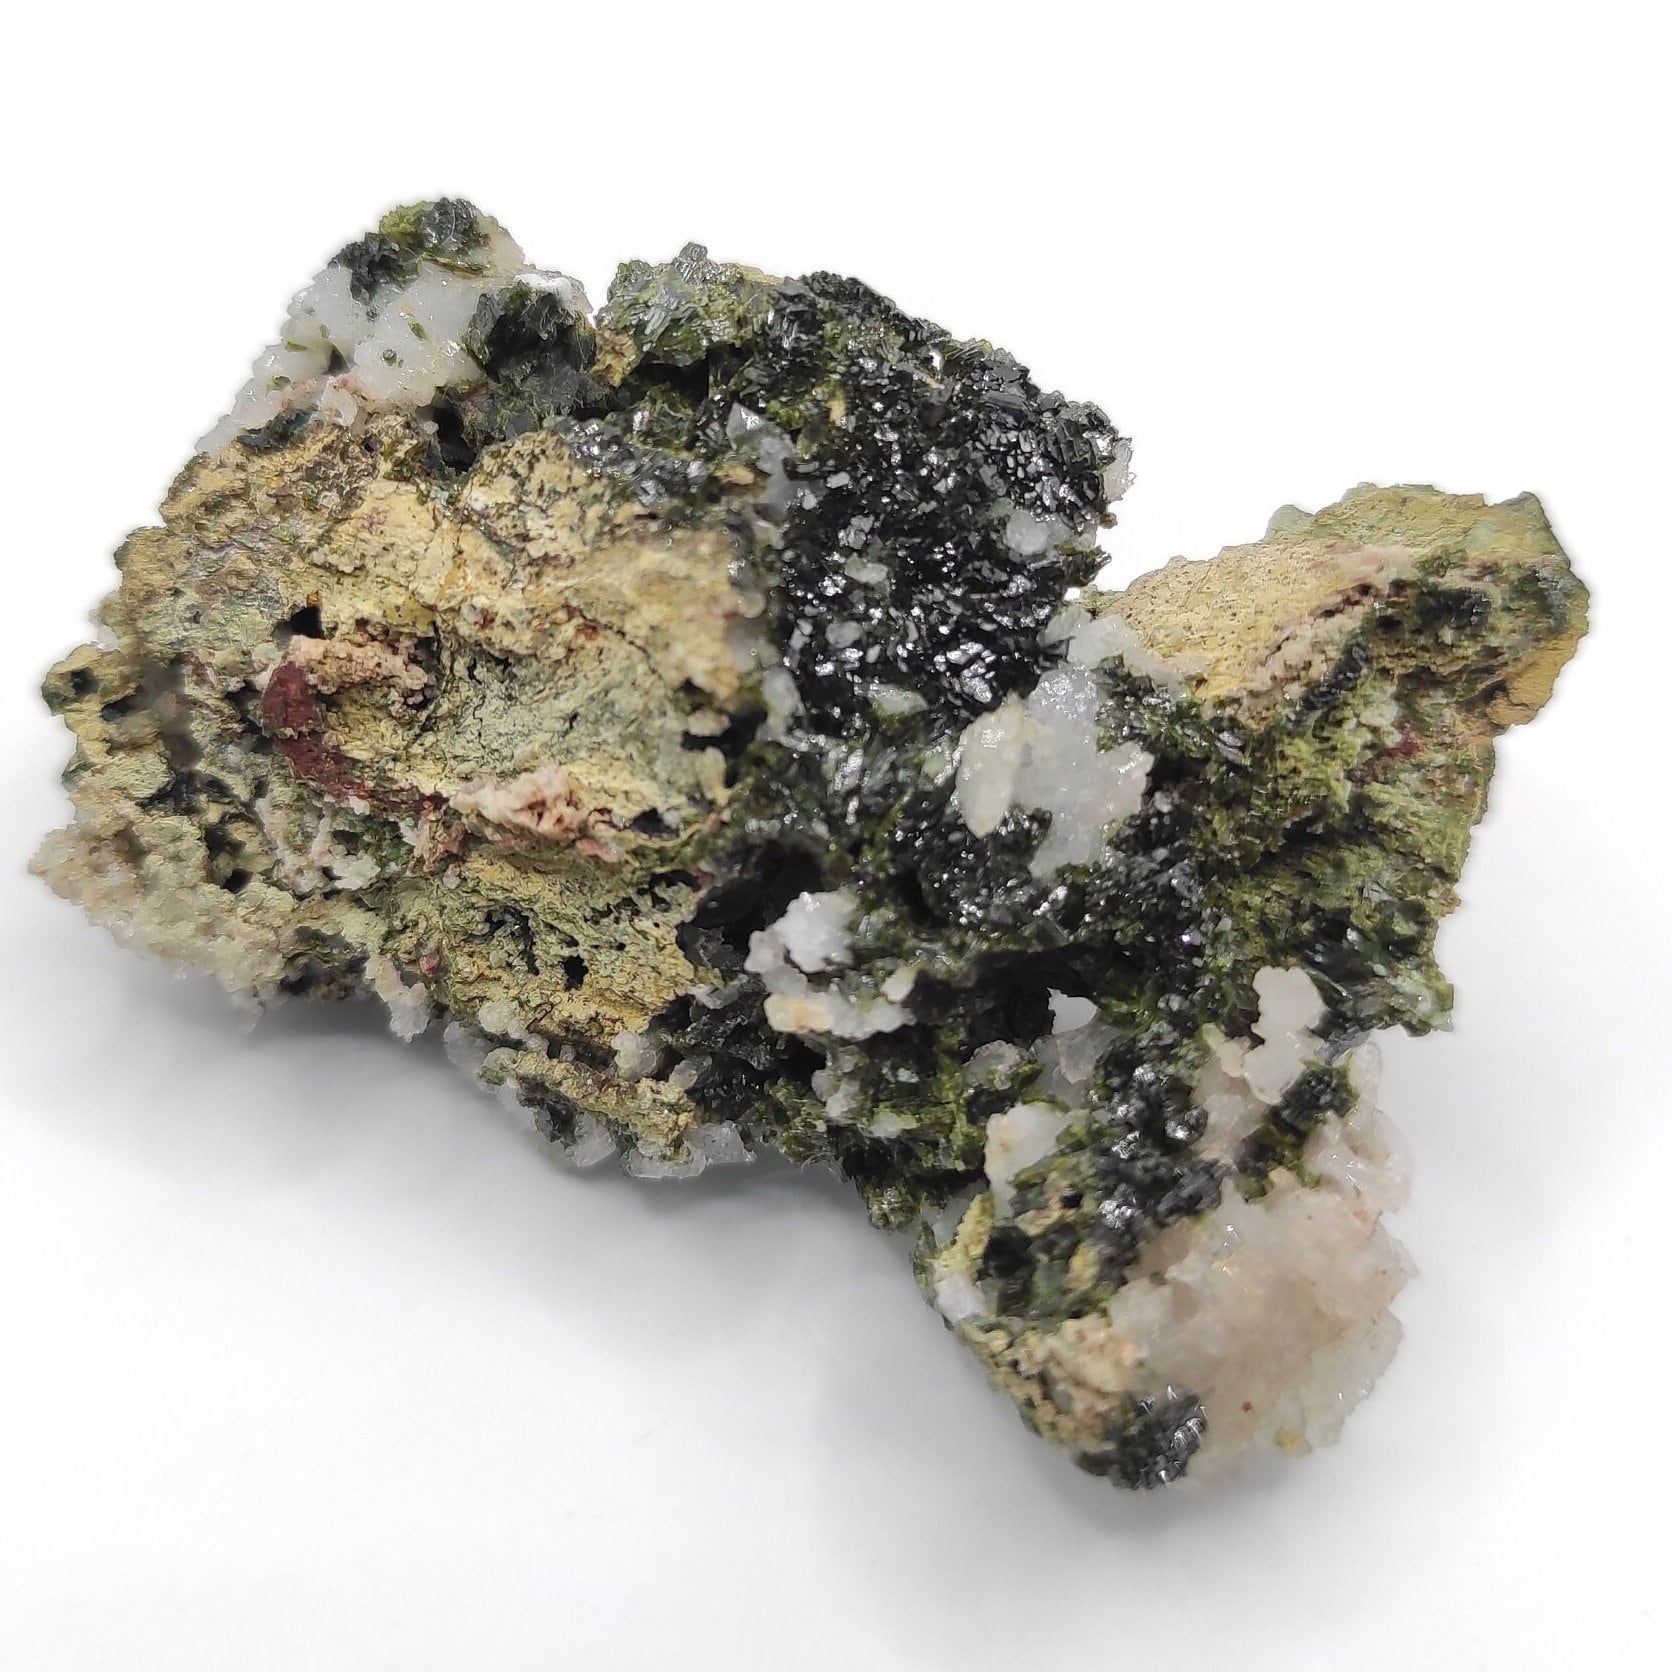 35g Sparkly Epidote & Forest Quartz - Hakkari, Turkey - Epidote with Clear Quartz - Forest Fairy Quartz - Natural Minerals - Rare Find